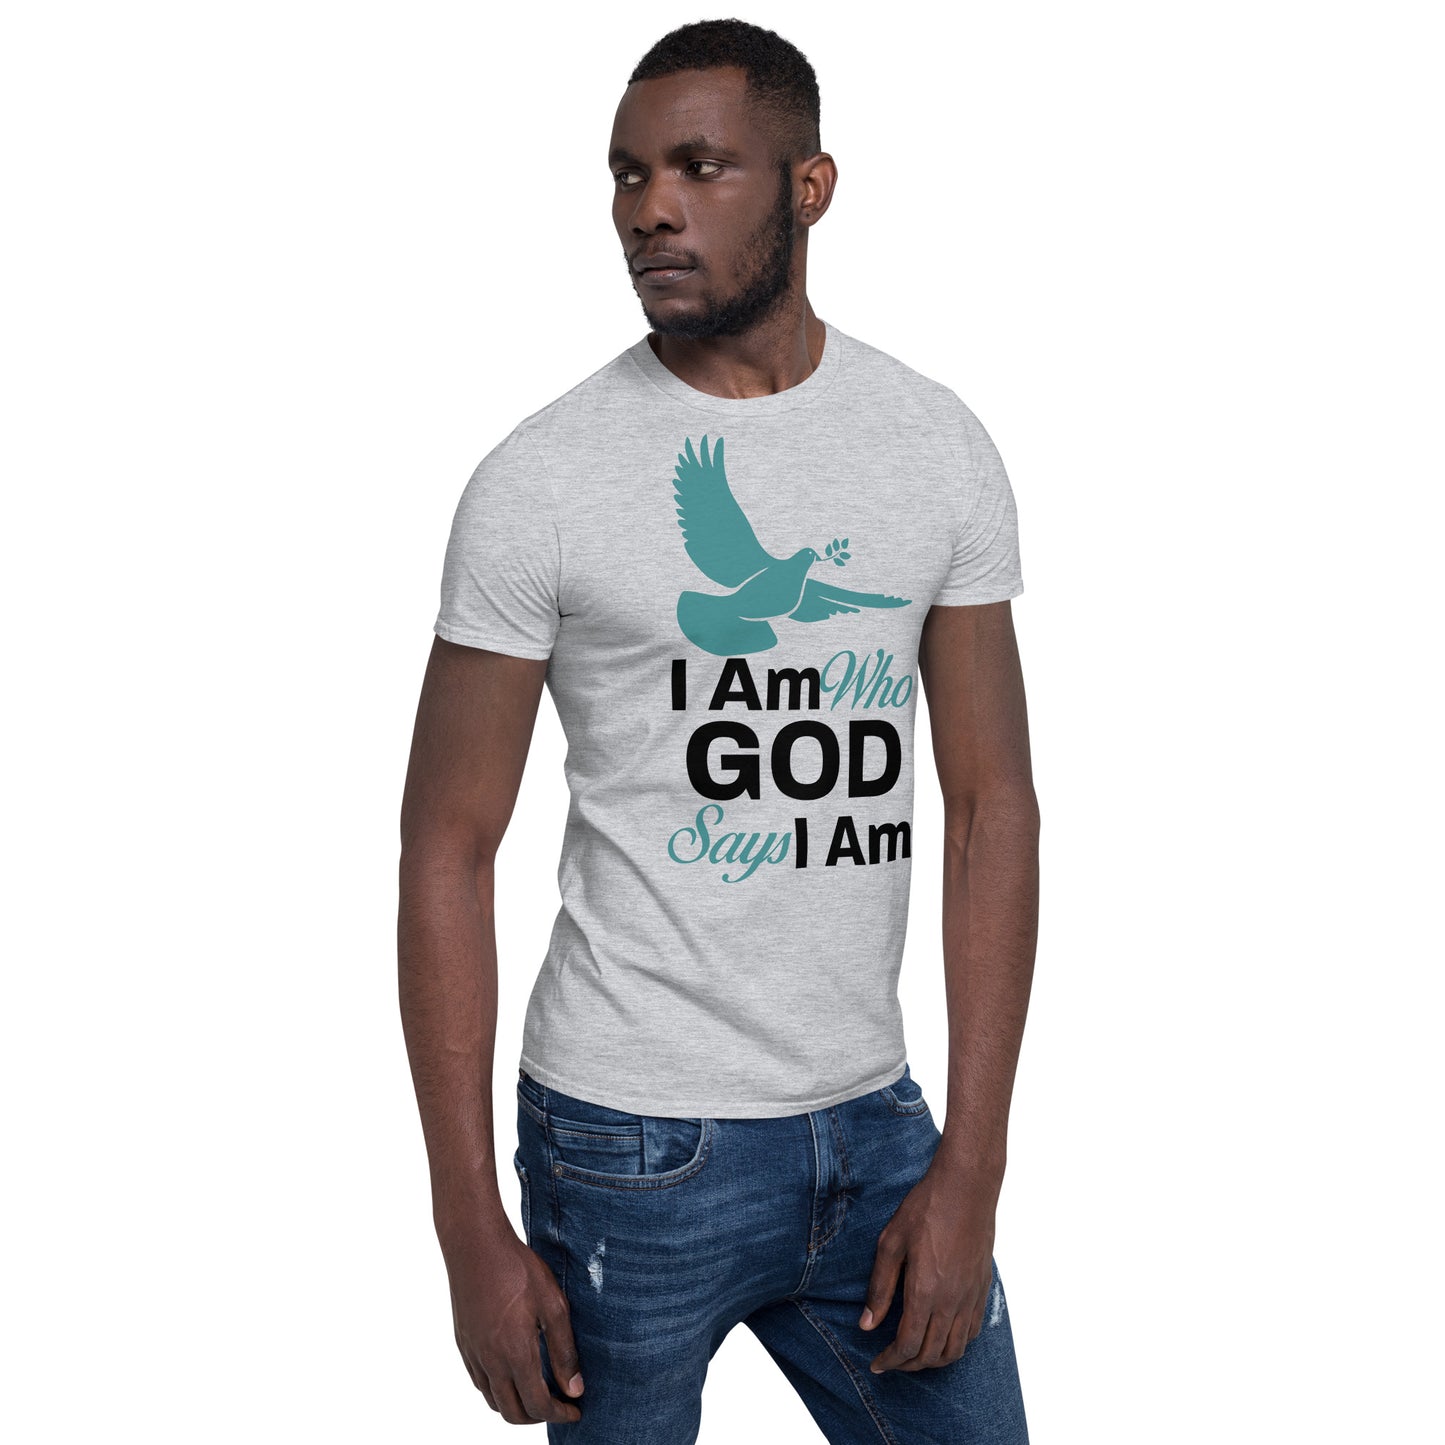 I Am Who God Says I Am - Inspirational Unisex T-Shirt with Durable Double Stitching